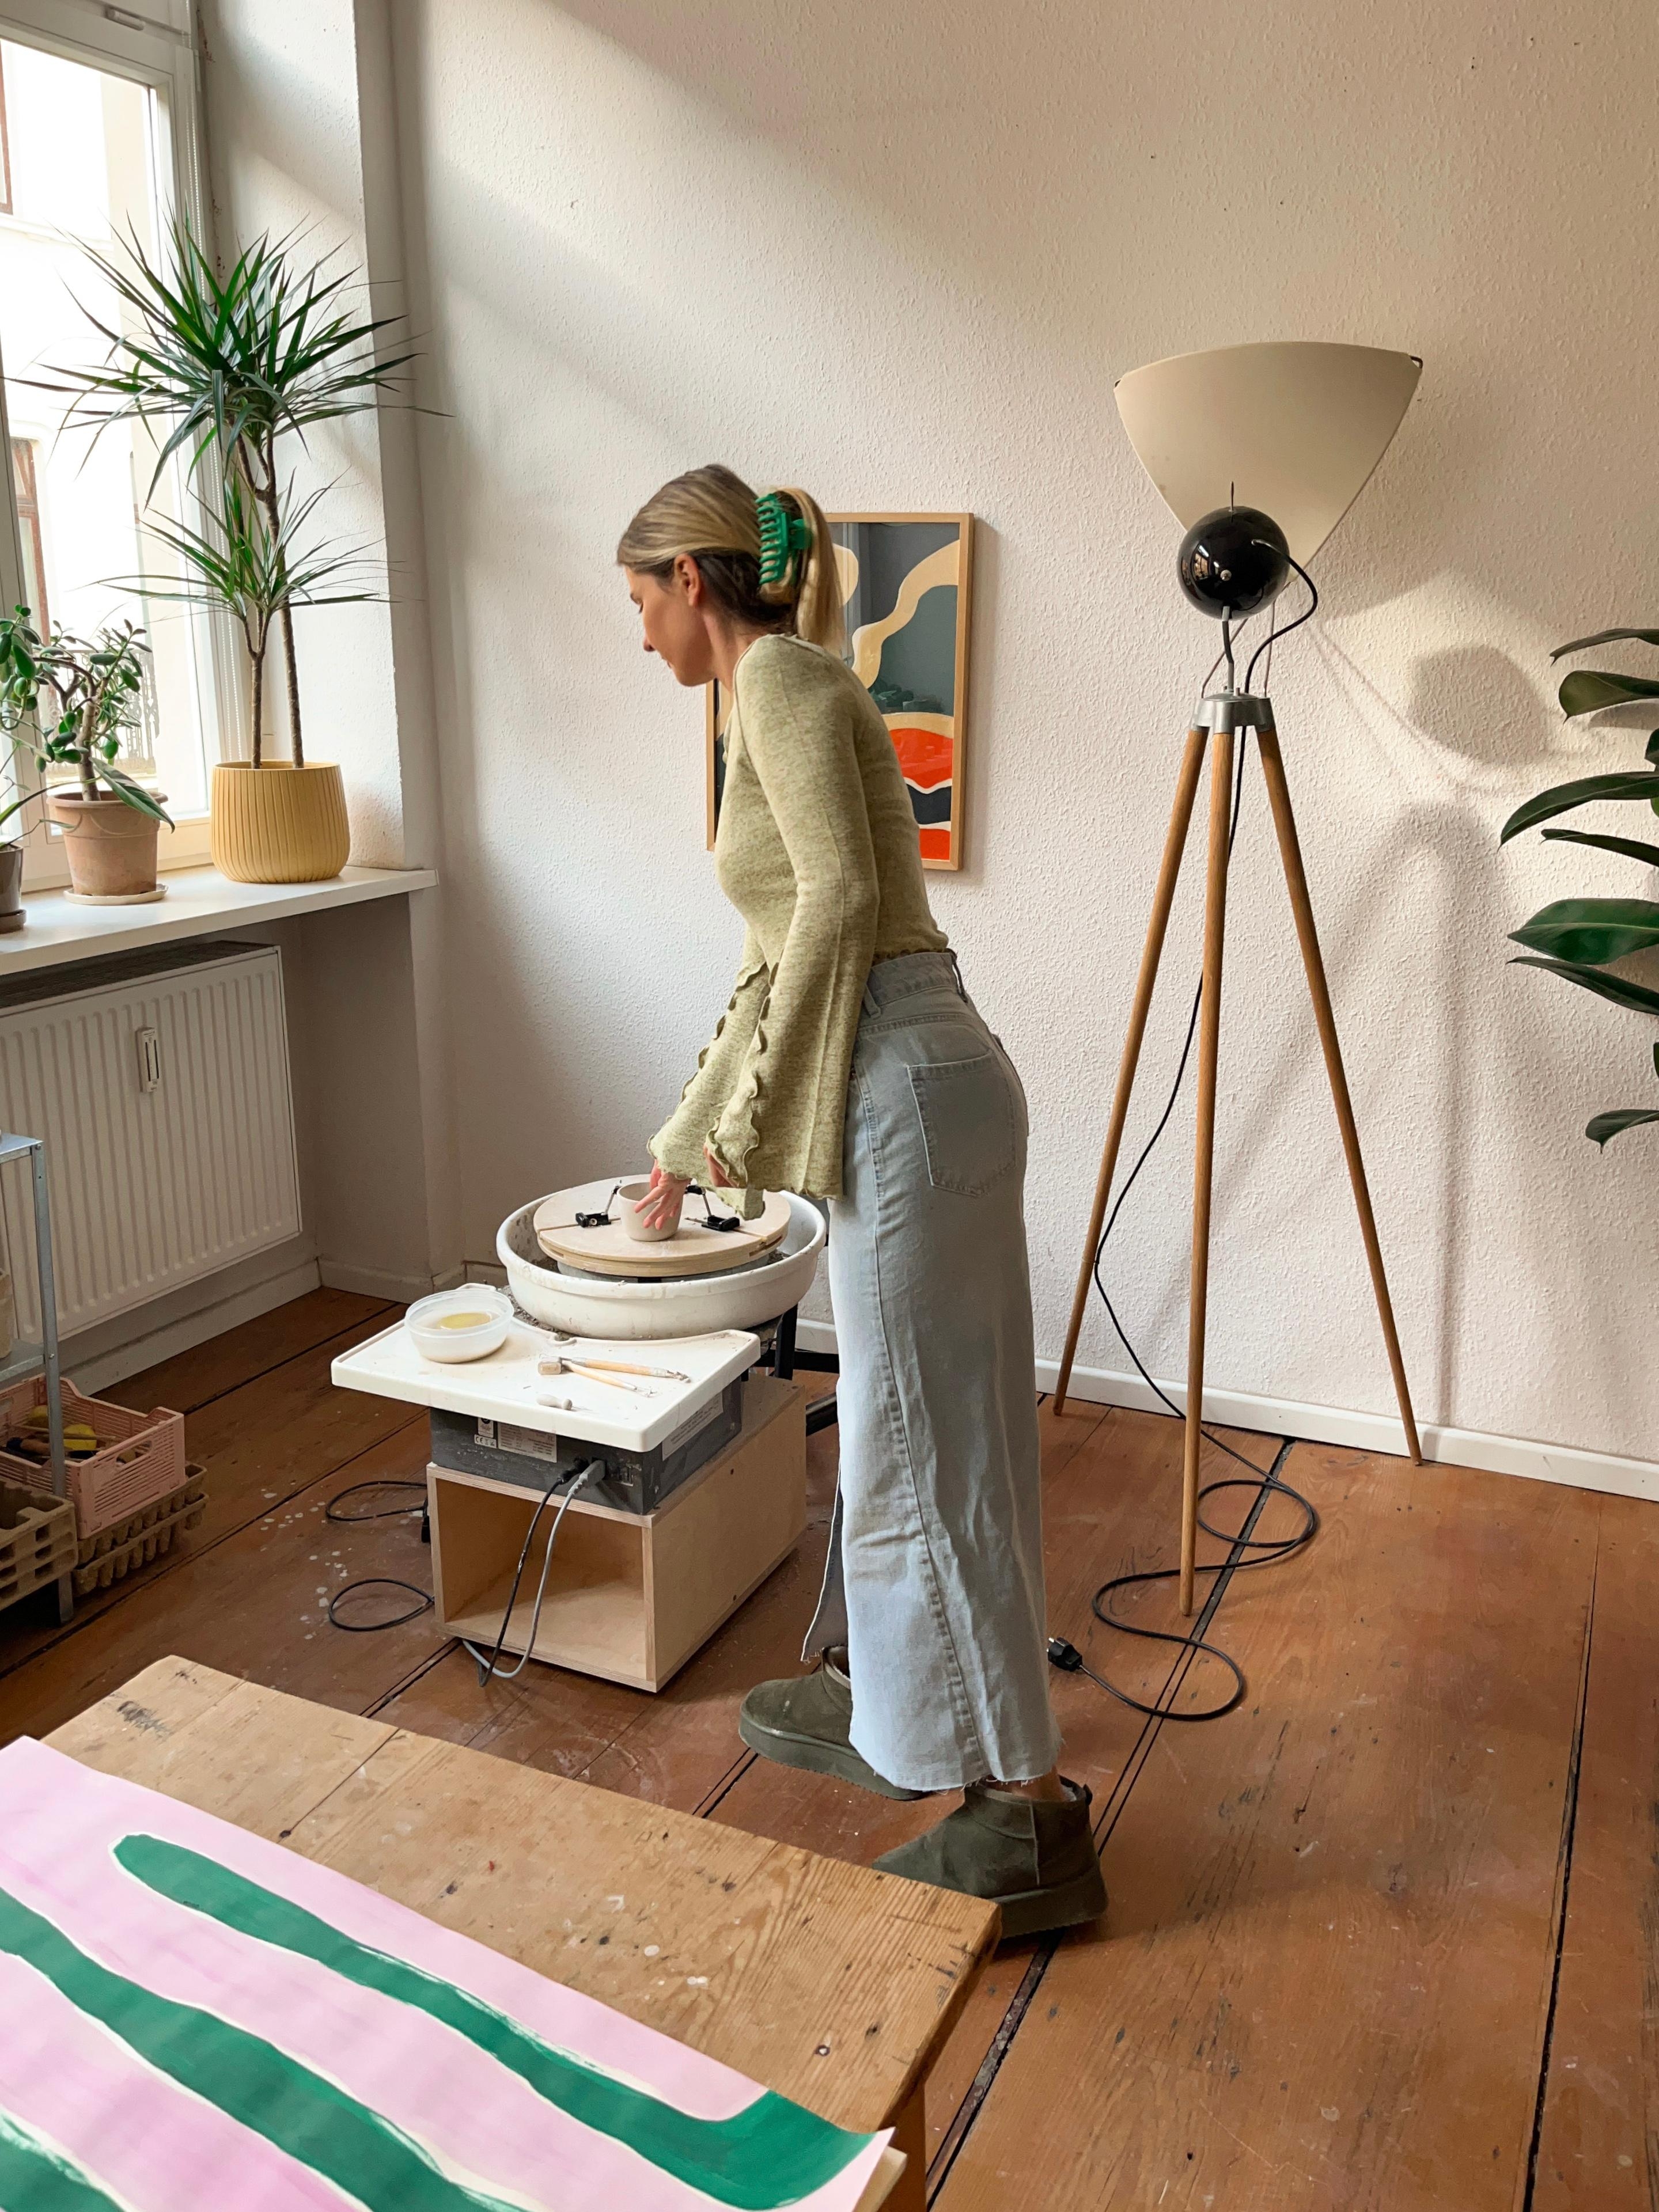 Neben dem Malen ist meine größte Leidenschaft das #Töpfern 😍 Momentan habe ich mein #Atelier noch zu Hause!
#Studio #Altbau #interior #diy #Töpferscheibe